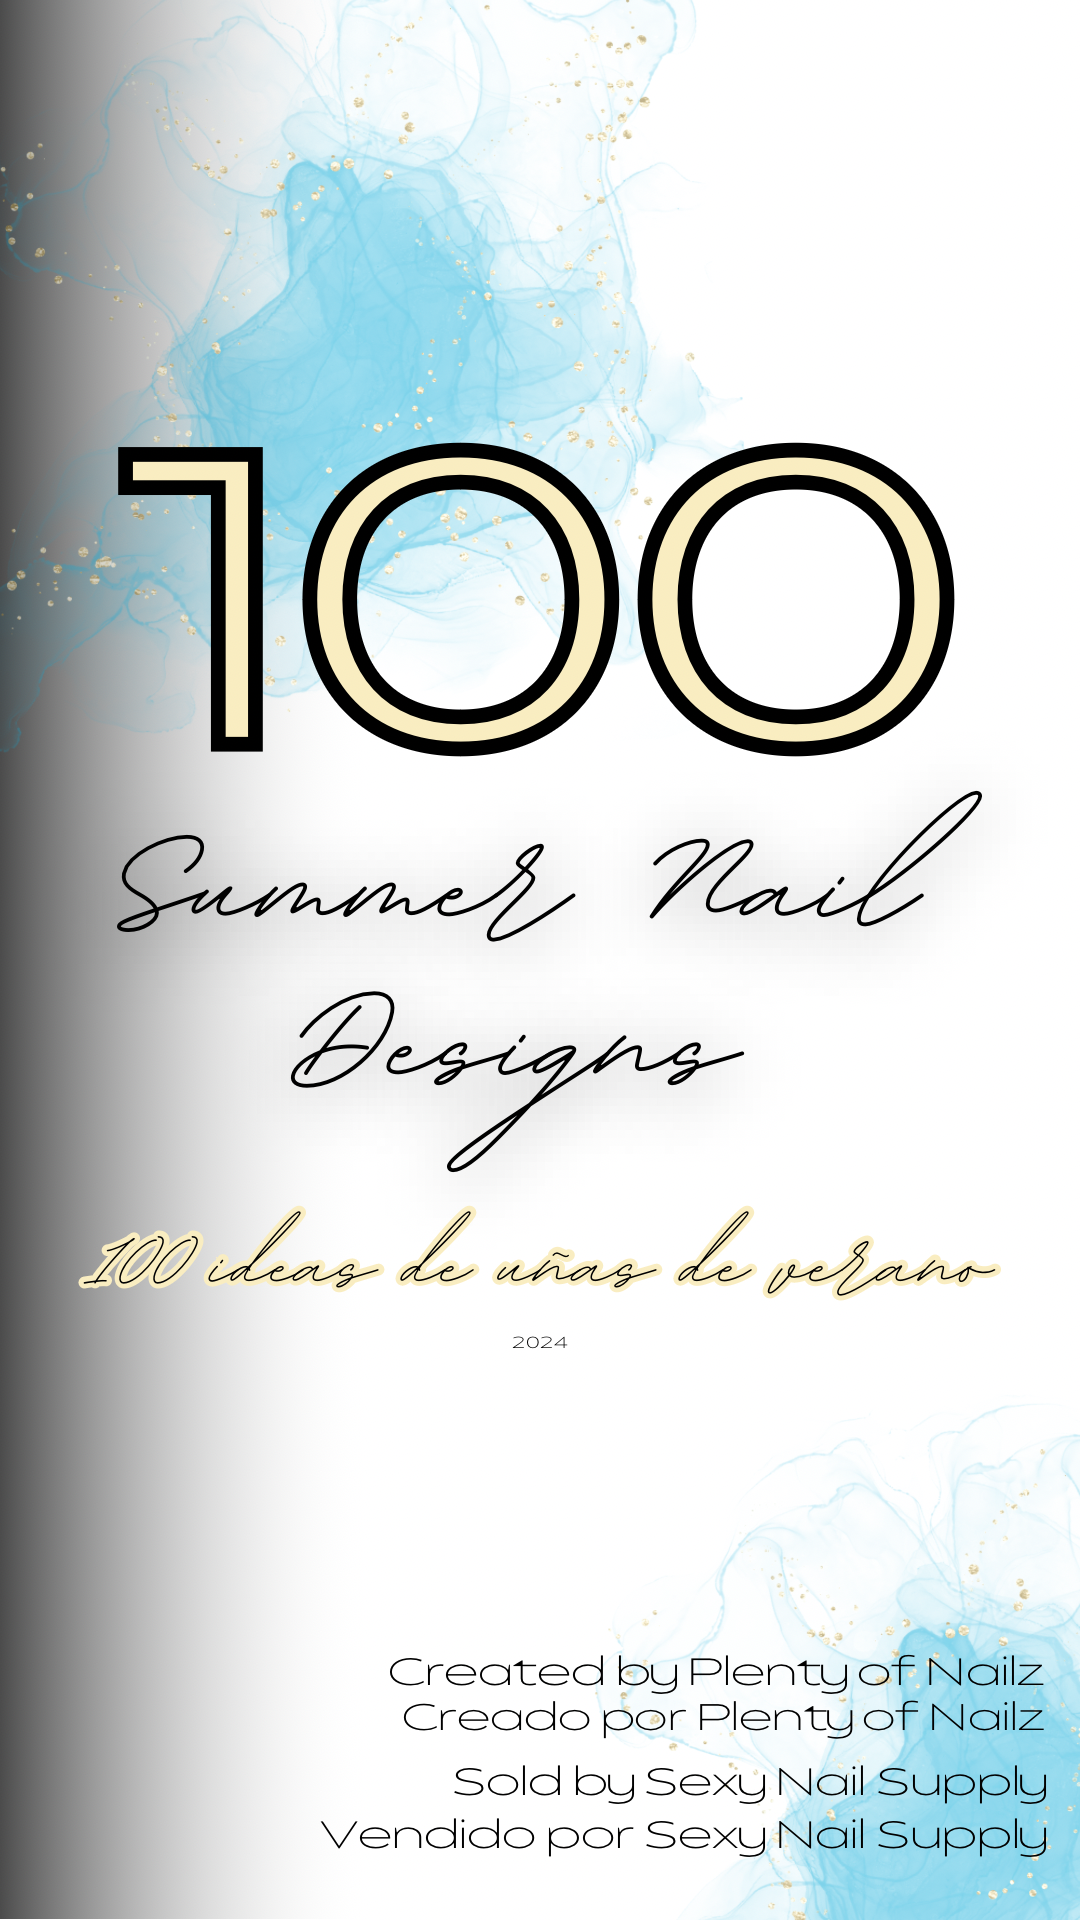 100 Summer Nail Content Ideas/100 ideas de contenido de uñas de verano